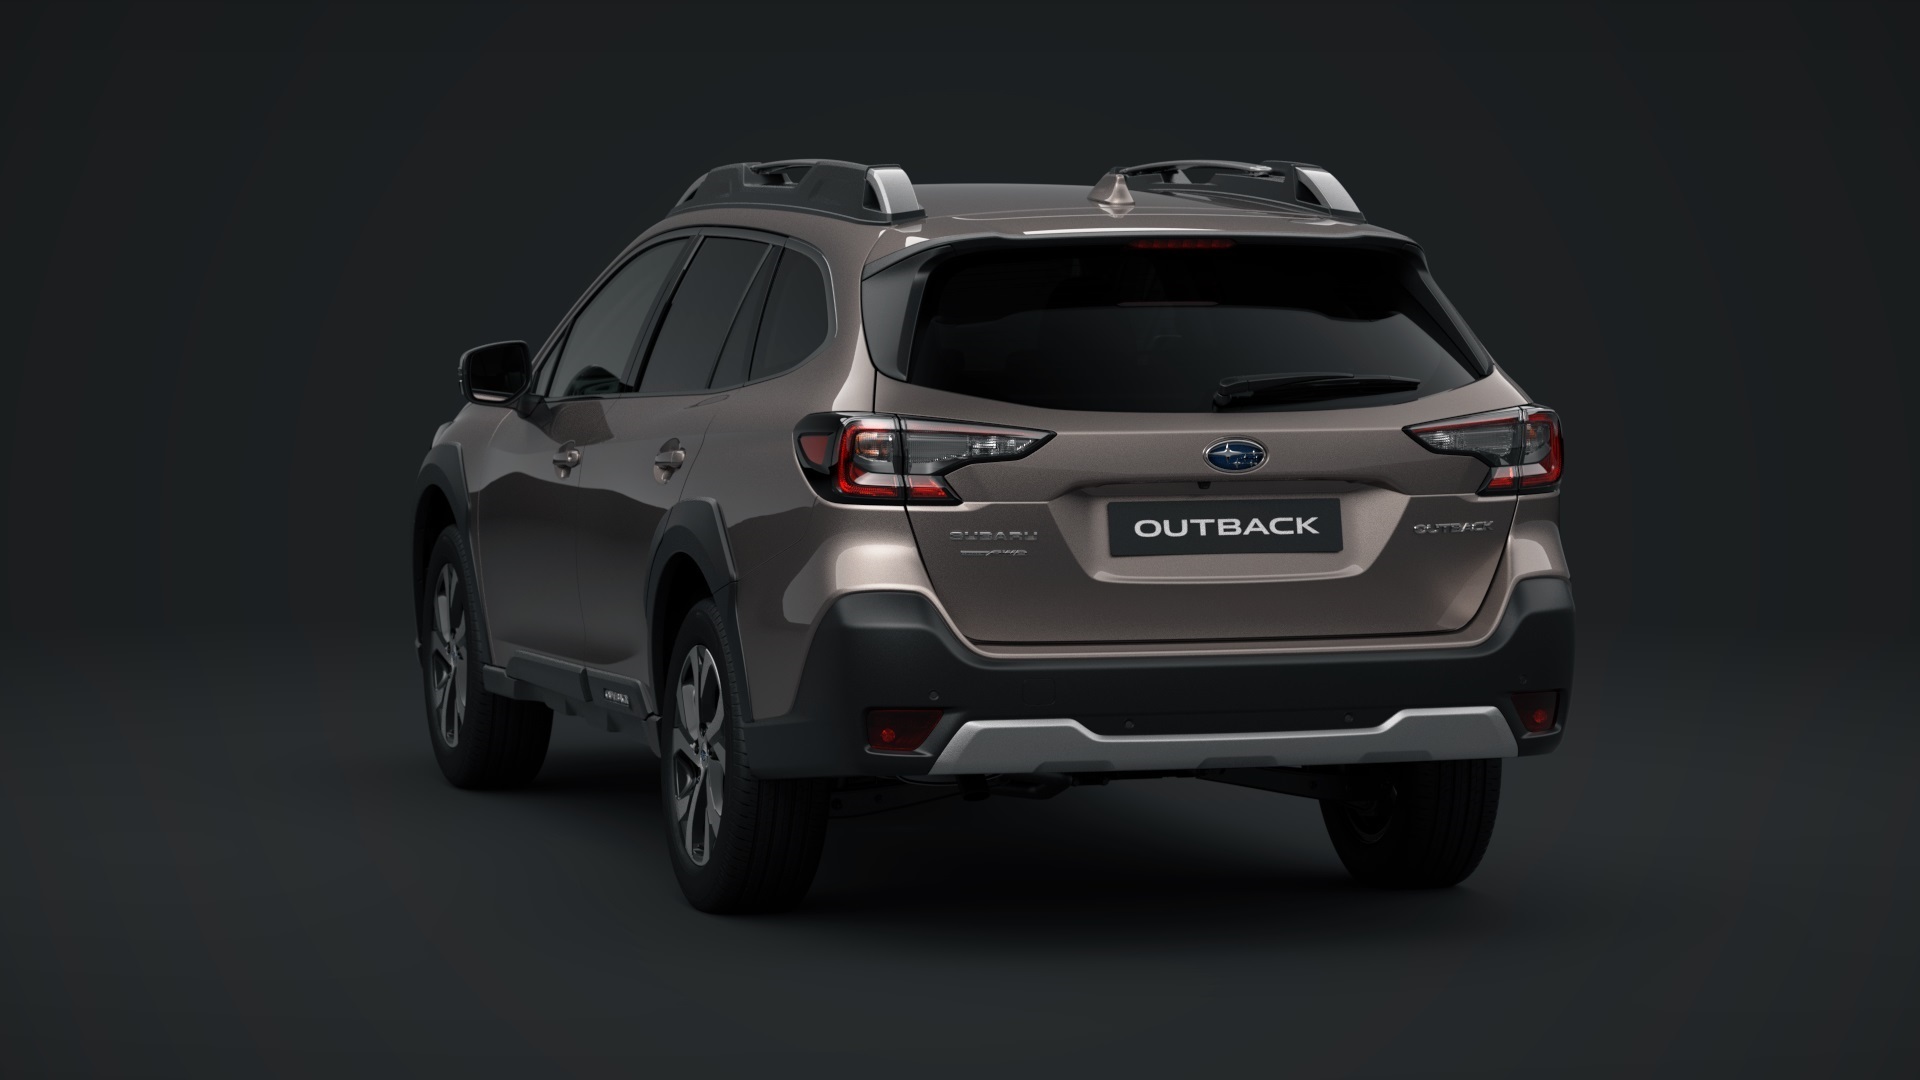 Subaru Outback 2021 0321 03